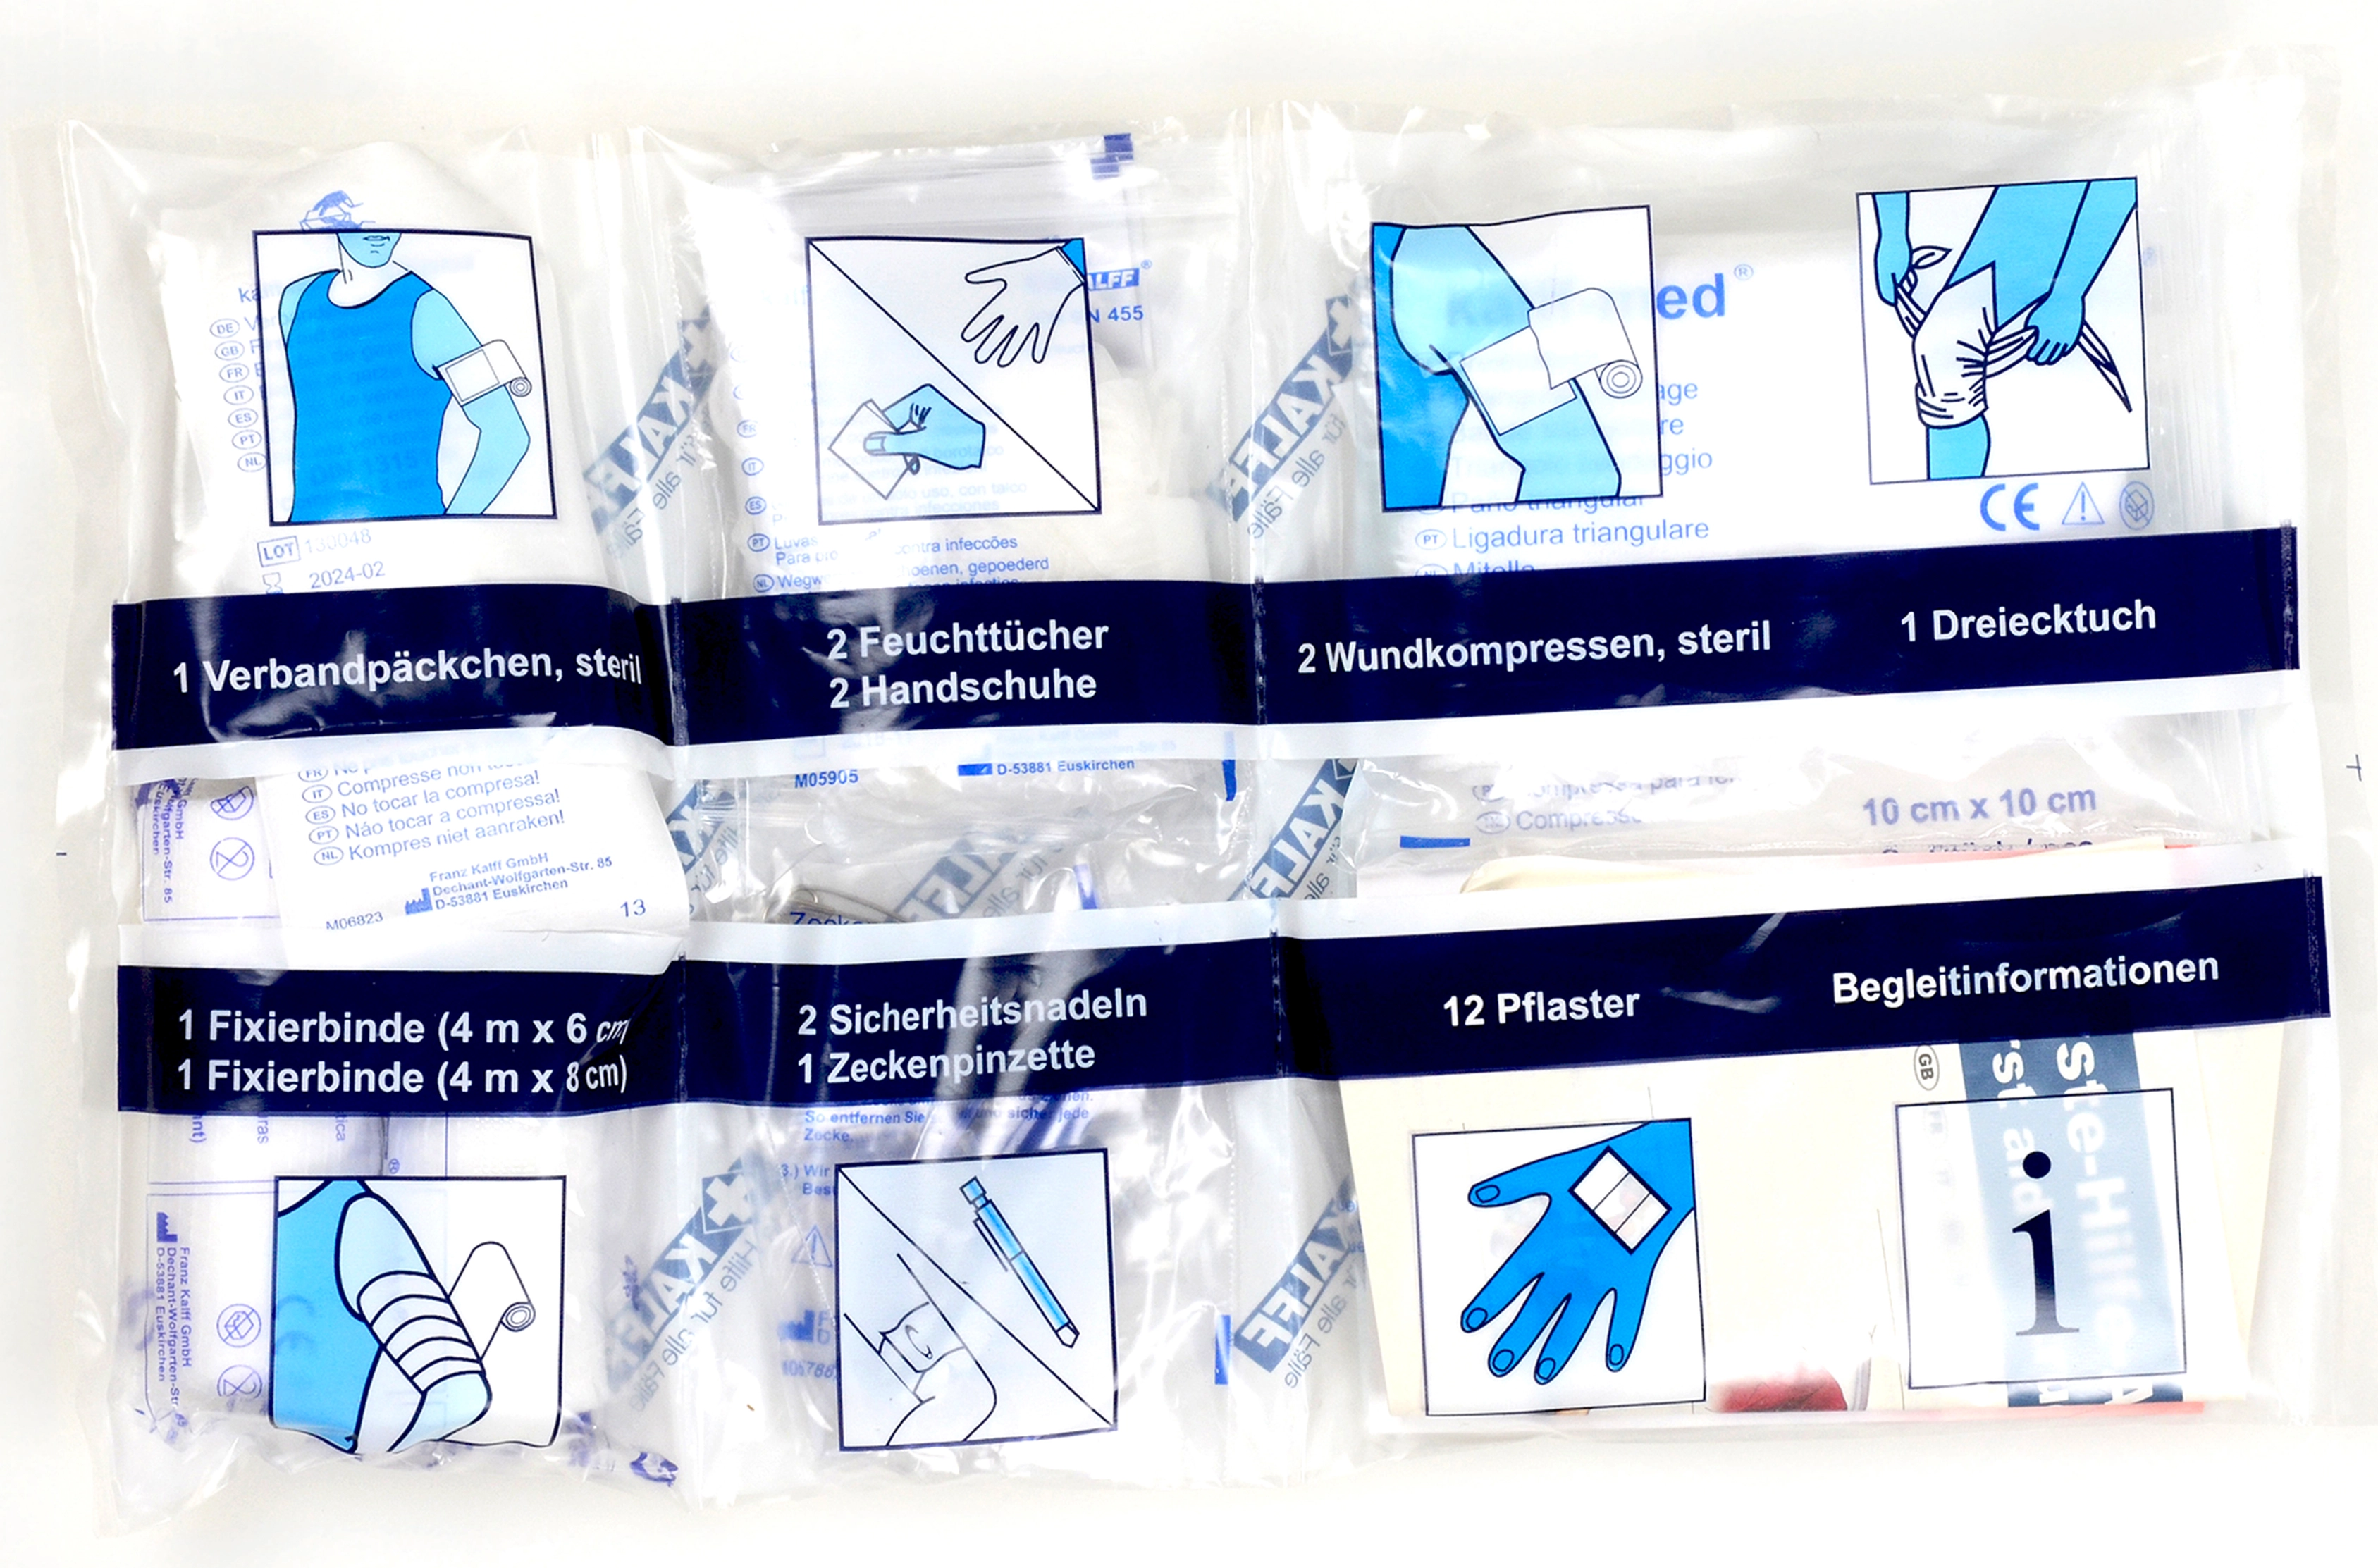 Kalff Kfz-Verbandkasten kompakt DIN 13164:2014 vollwertiges Erste-Hilfe-Set  kaufen bei OBI